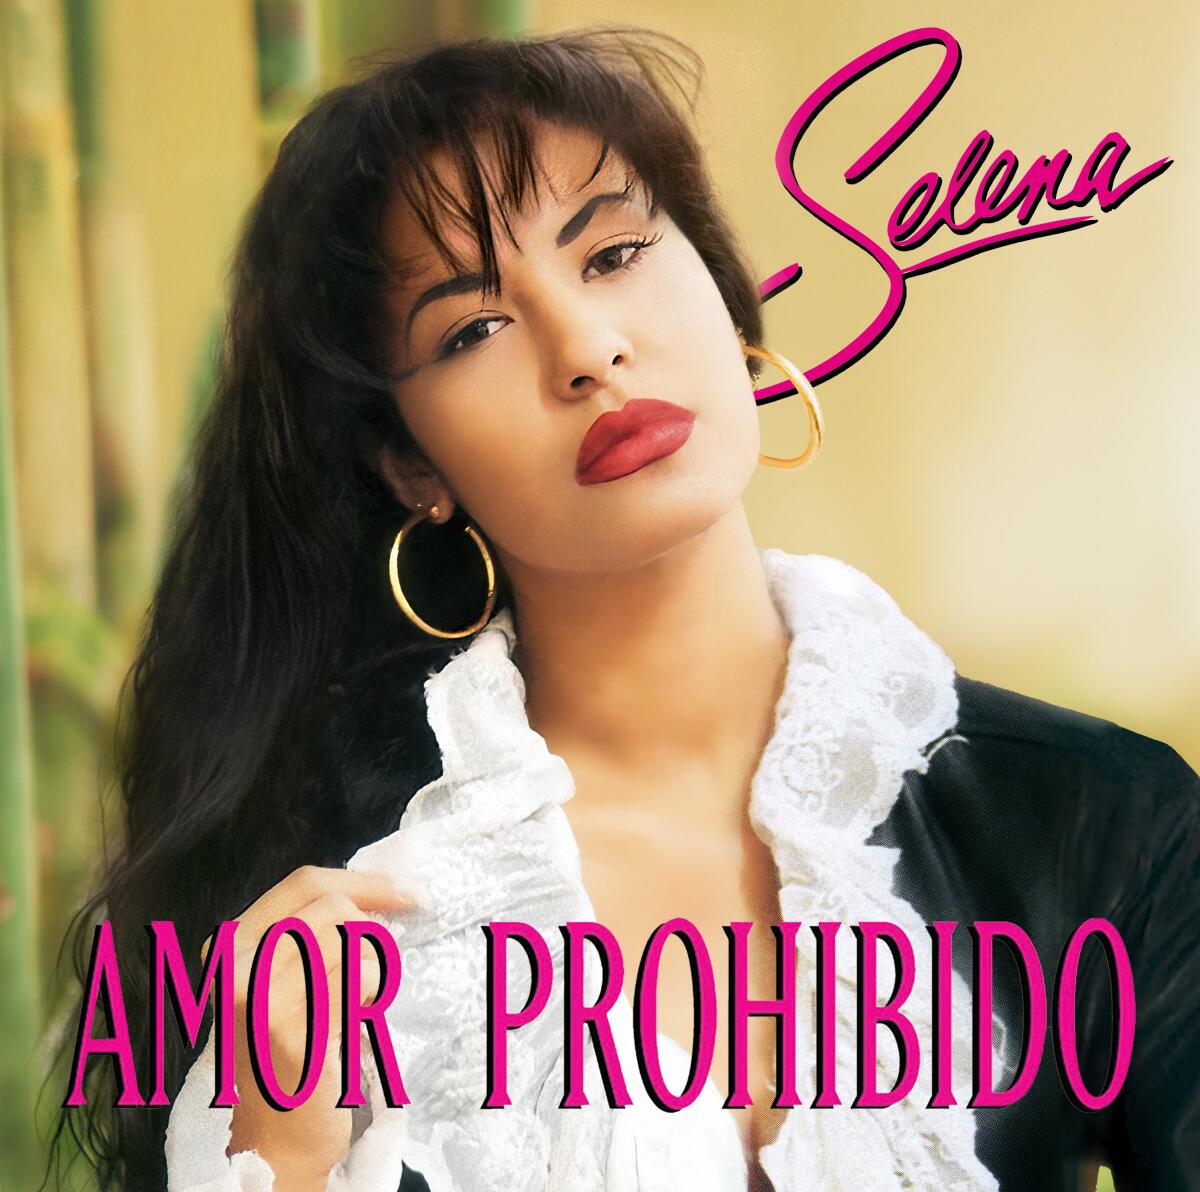 "Amor Prohibido" celebra su 30 aniversario con un formato en vinilo, CD y casette.